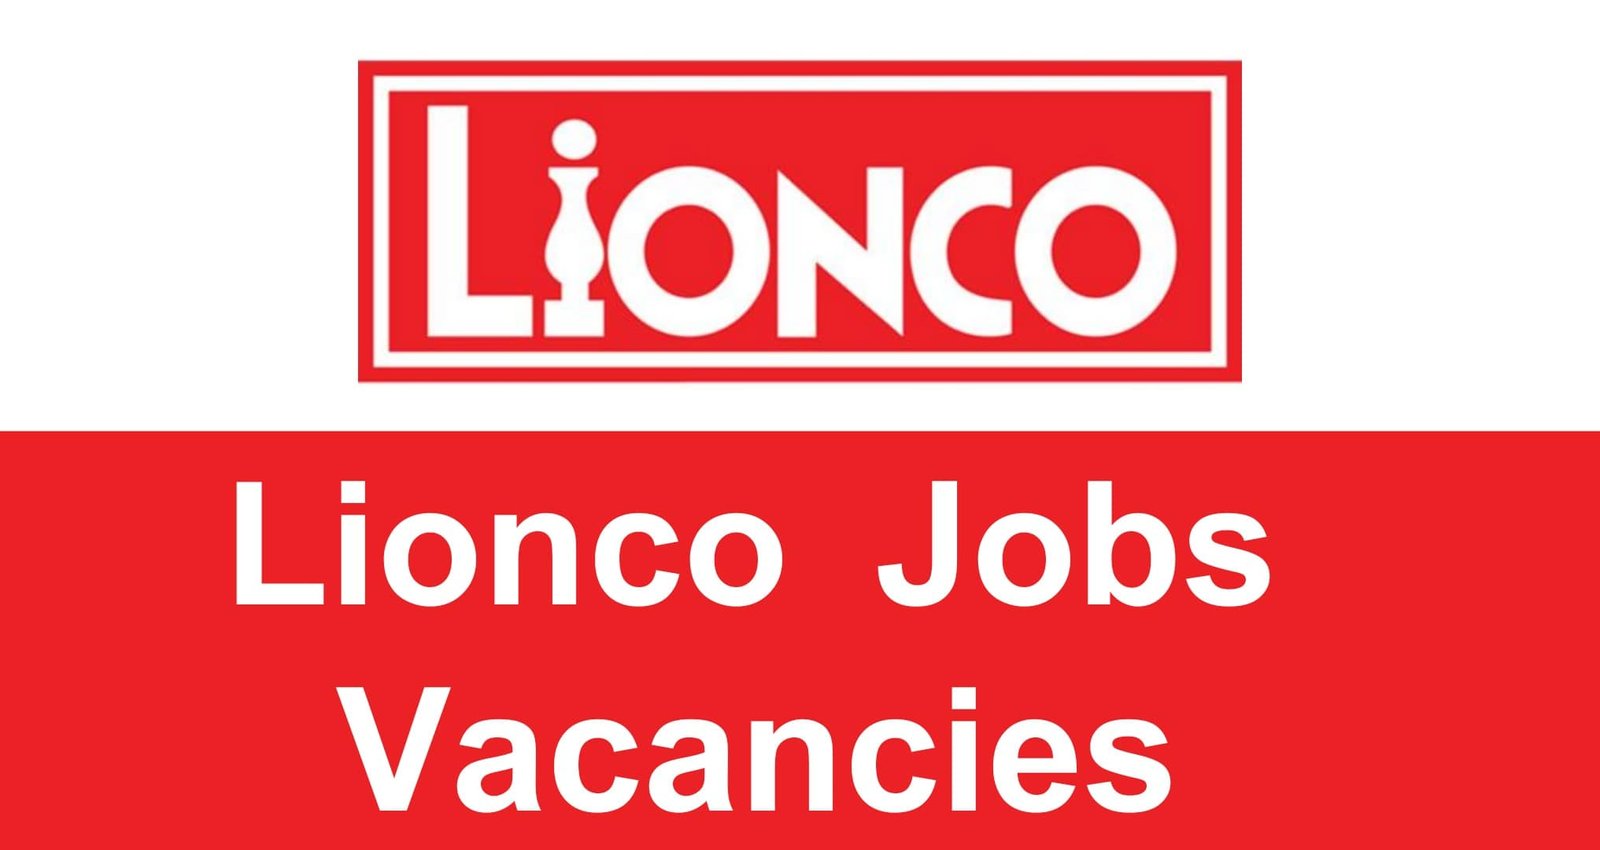 Lionco Jobs Vacancies